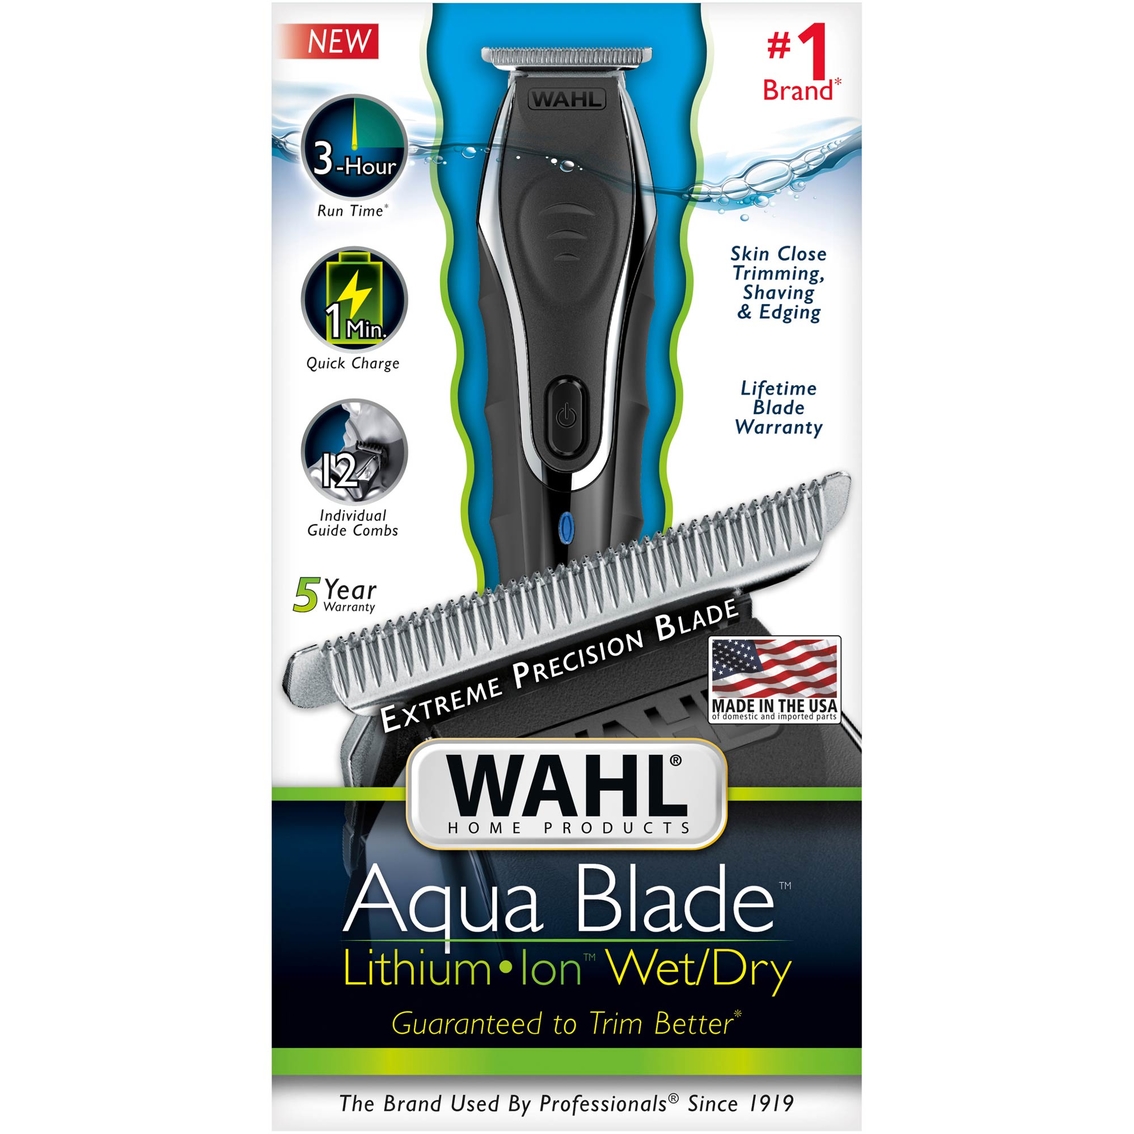 wahl aqua blade charger